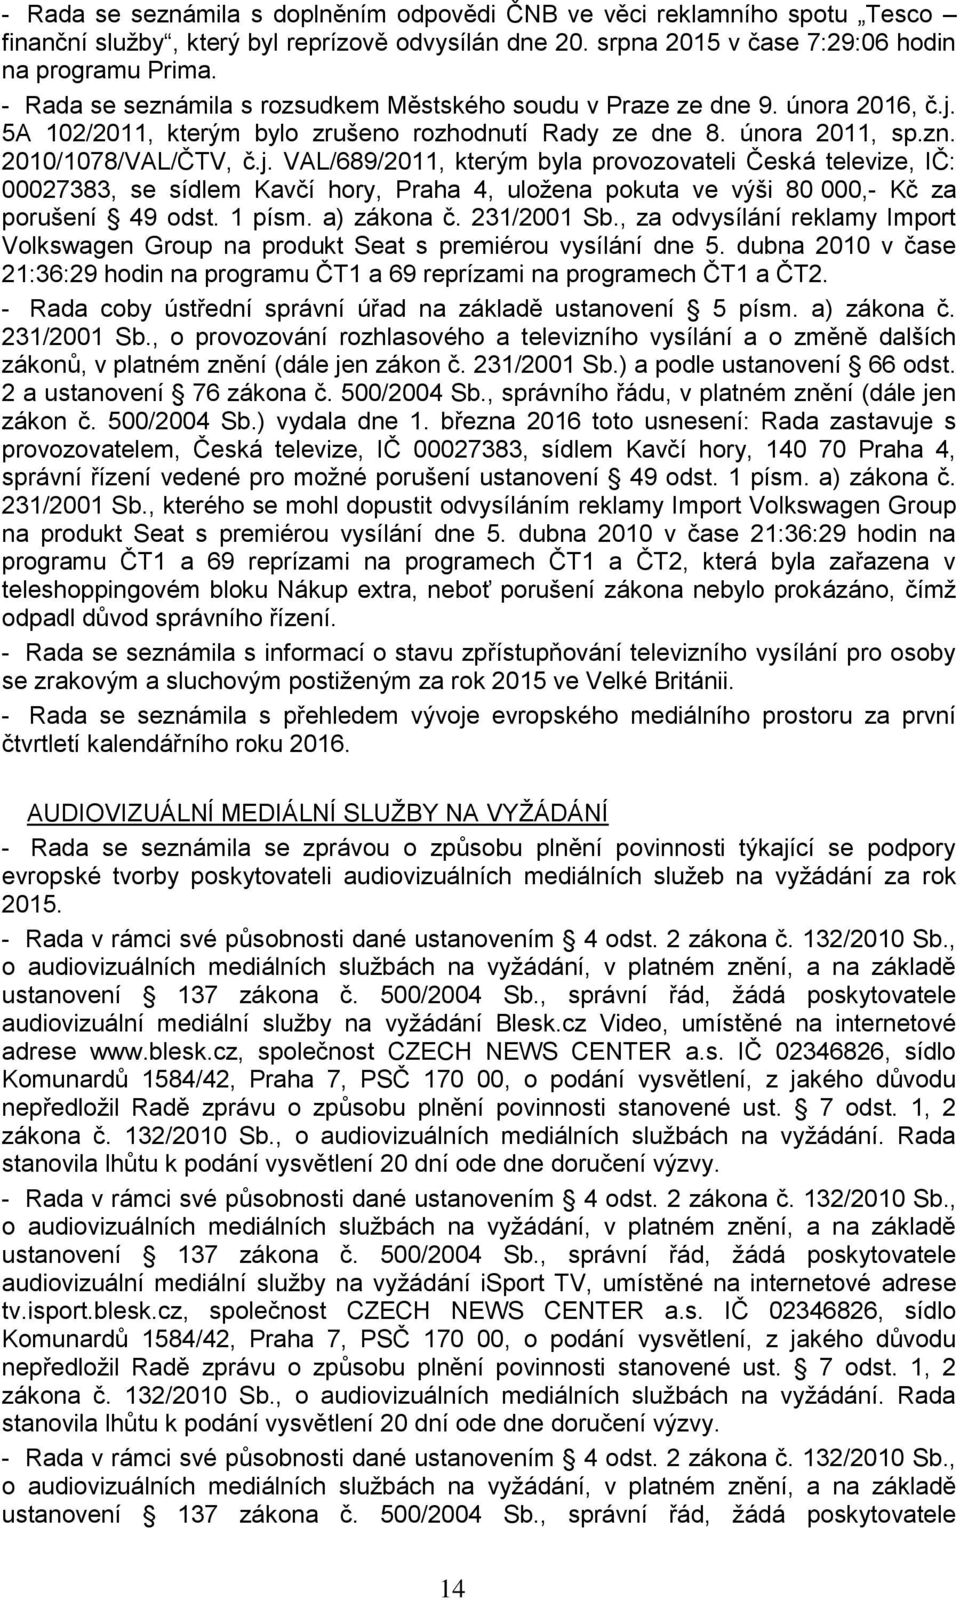 5A 102/2011, kterým bylo zrušeno rozhodnutí Rady ze dne 8. února 2011, sp.zn. 2010/1078/VAL/ČTV, č.j.